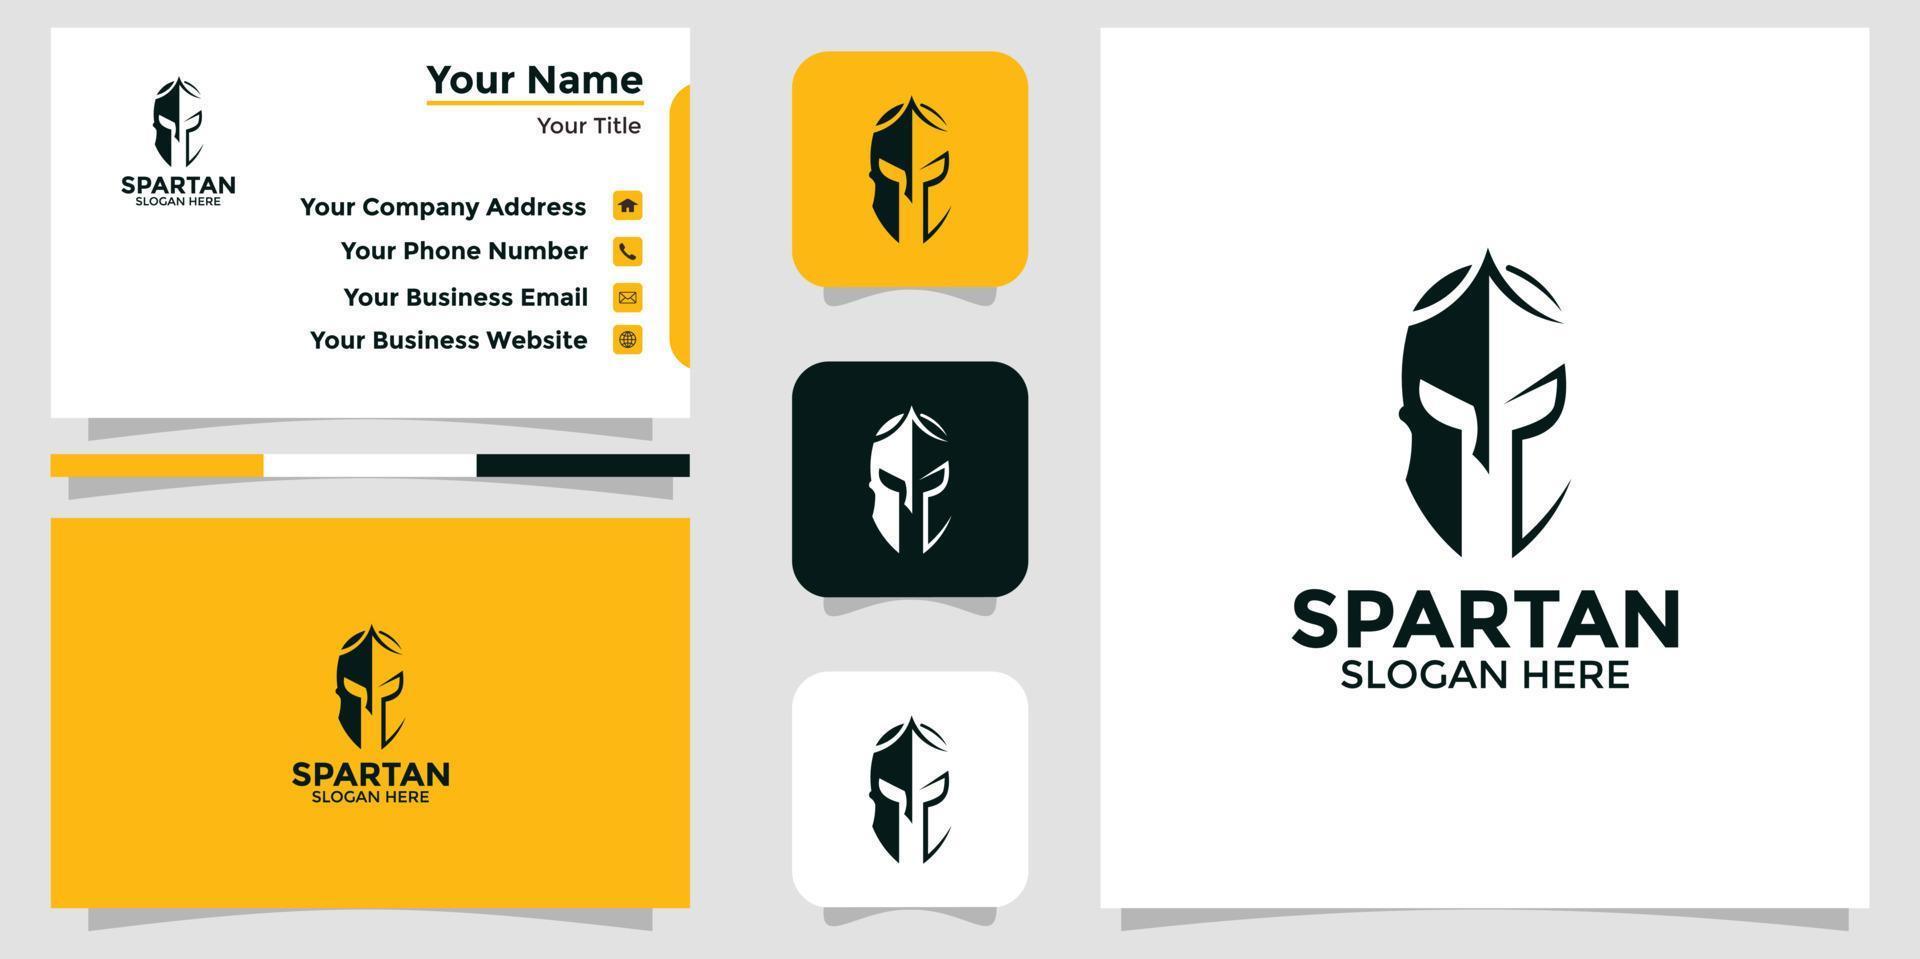 spartan design logo and branding card vector